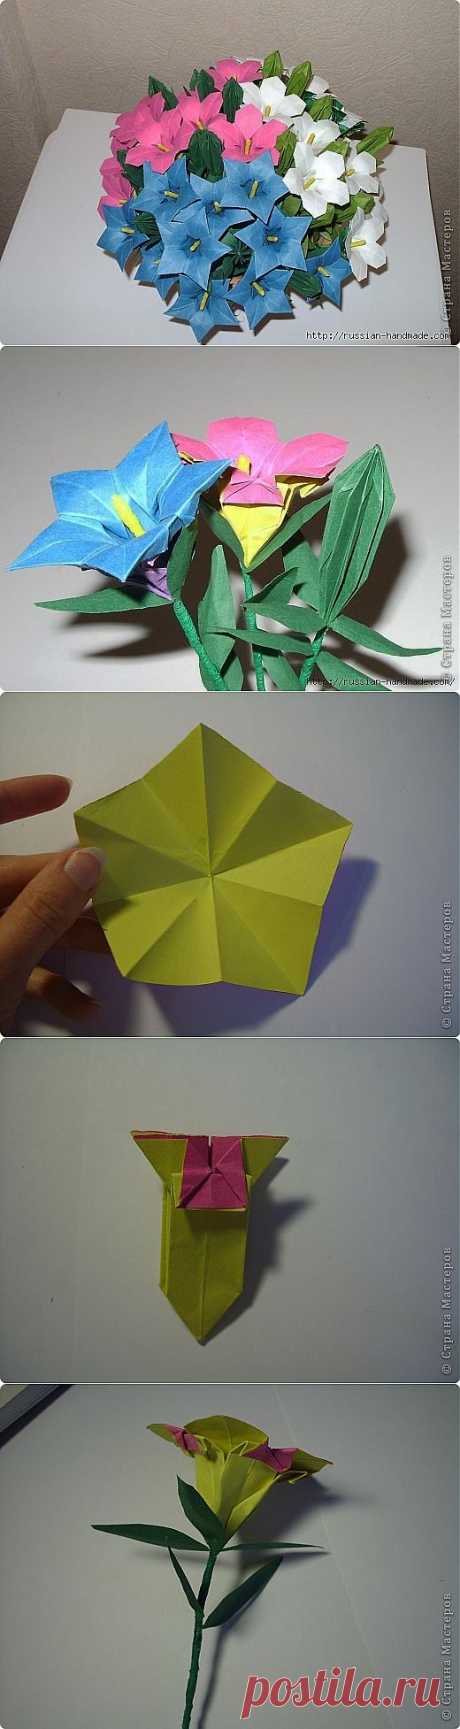 Весенний букет полевых цветов в технике оригами. Мастер-класс.